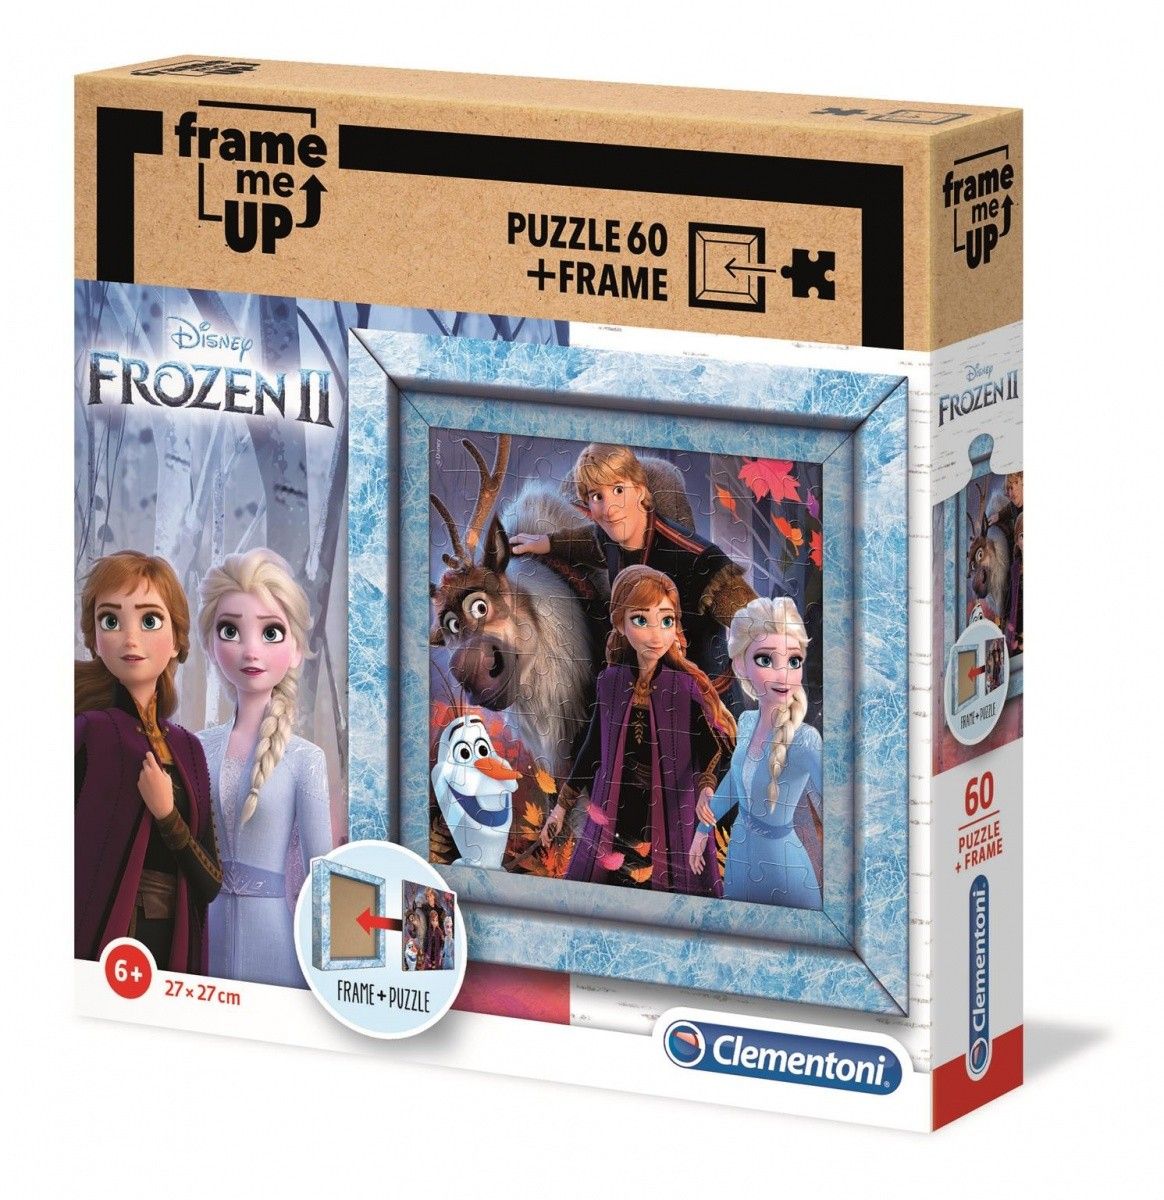 Puzzle Clementoni 60 dílků FRAME - Frozen II 38803